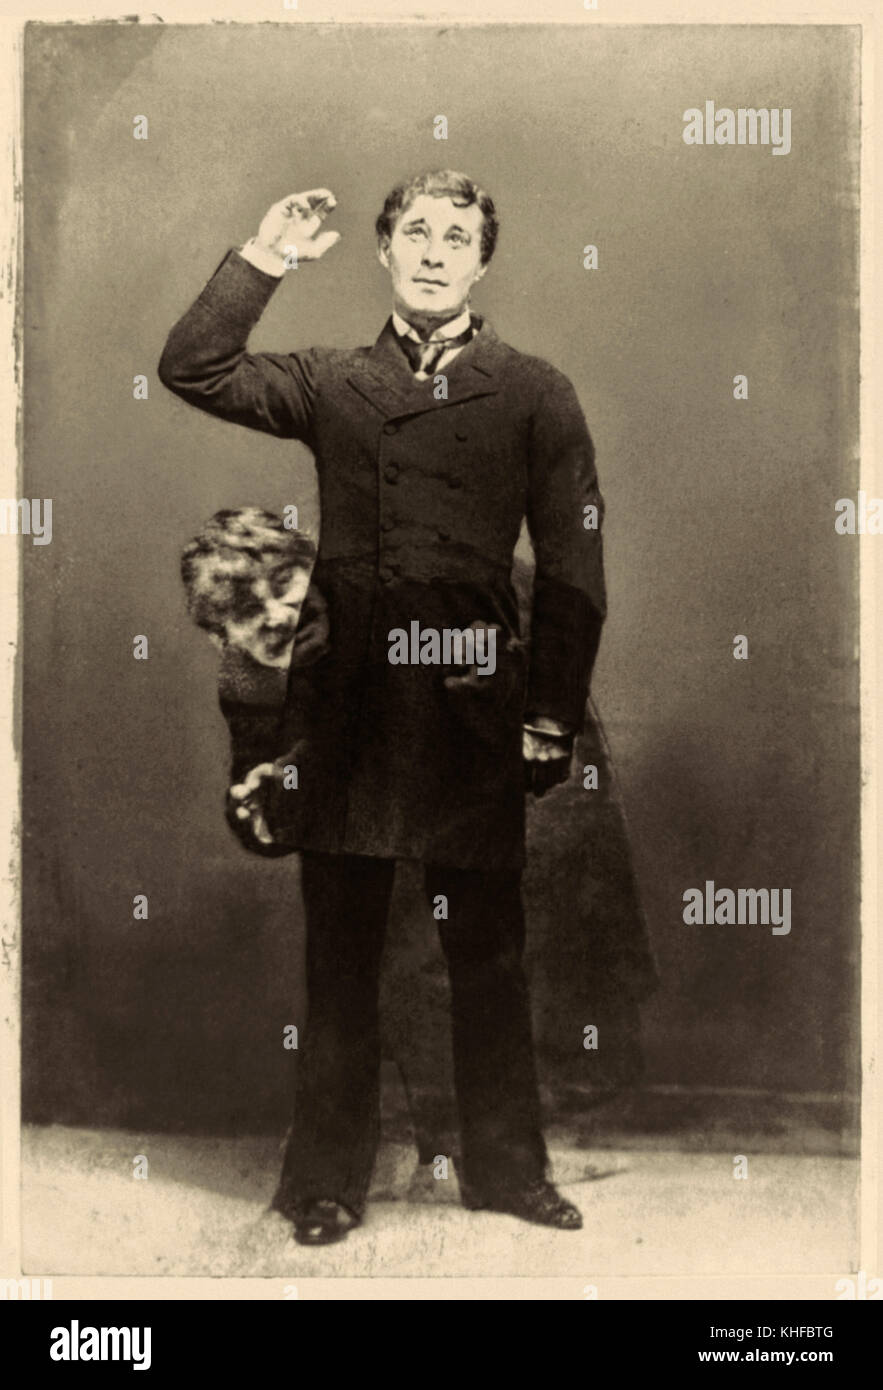 Richard Mansfield (1857-1907), englischer Schauspieler in überlagerte Foto, die zwei Charaktere, die er in 'r gespielt. Jekyll und Mr. Hyde'a 1887 Bühne Adaption von Robert Louis Stevenson (1850-1894) Gothic novel der 'Seltsame Fall von Dr. Jekyll und Mr Hyde" im Jahre 1886 veröffentlicht. Stockfoto